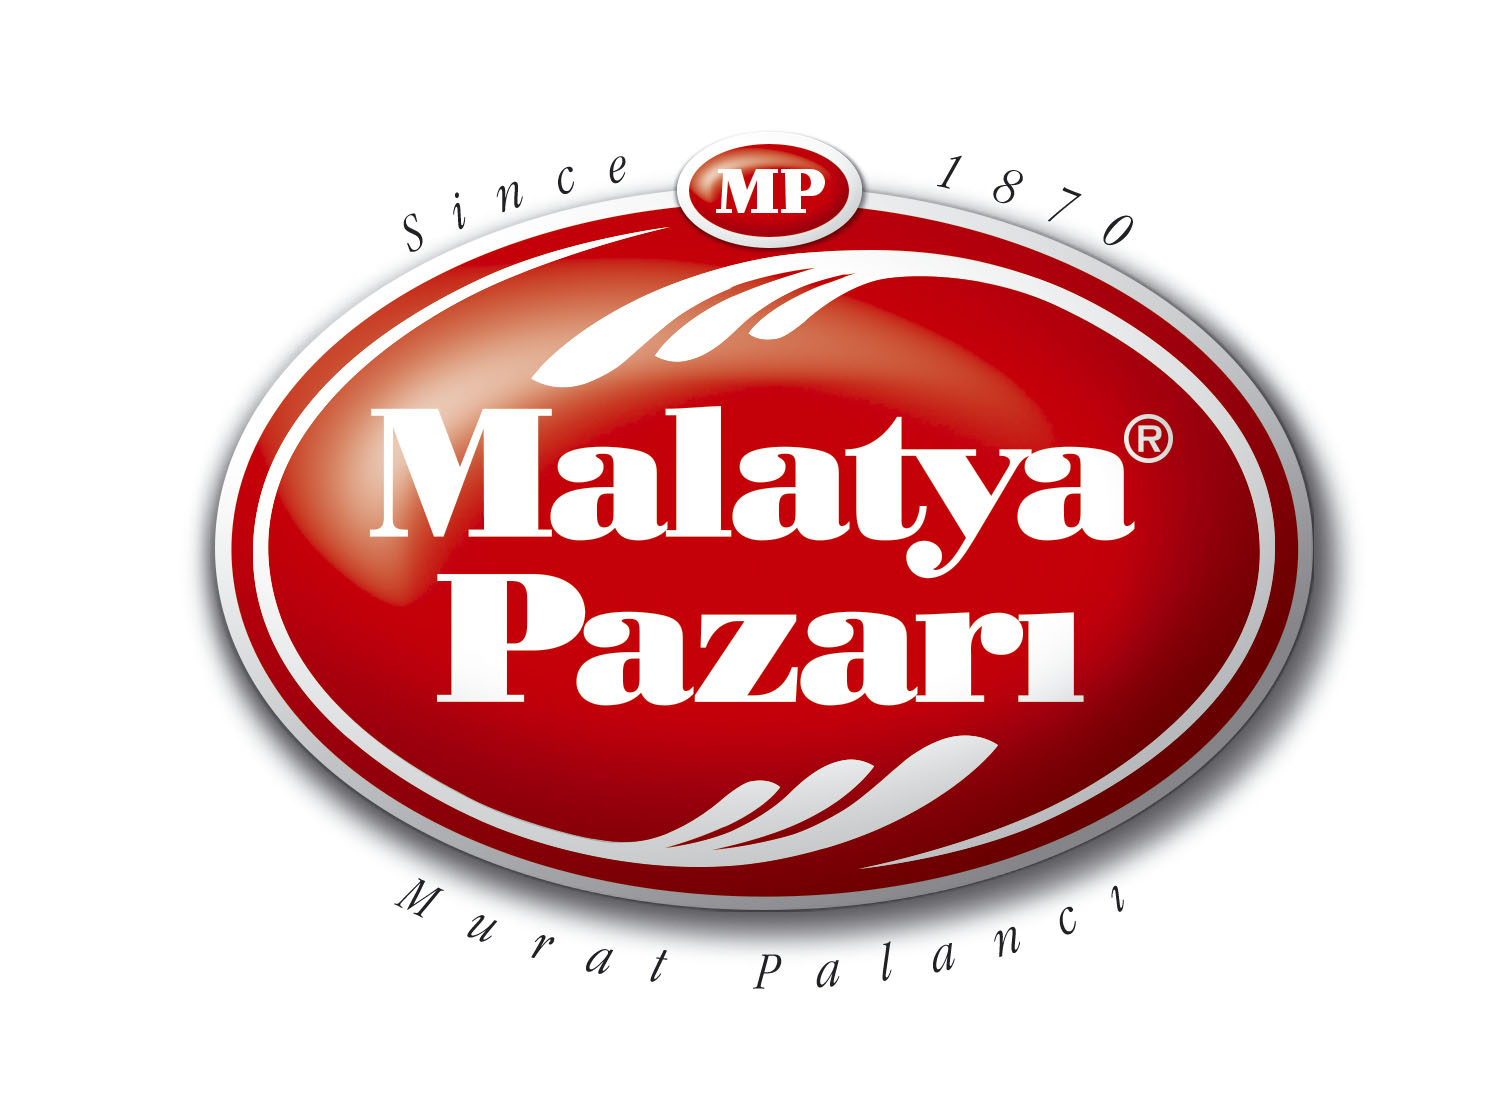  Turkish Mixed Nuts Vip Malatya Pazarı